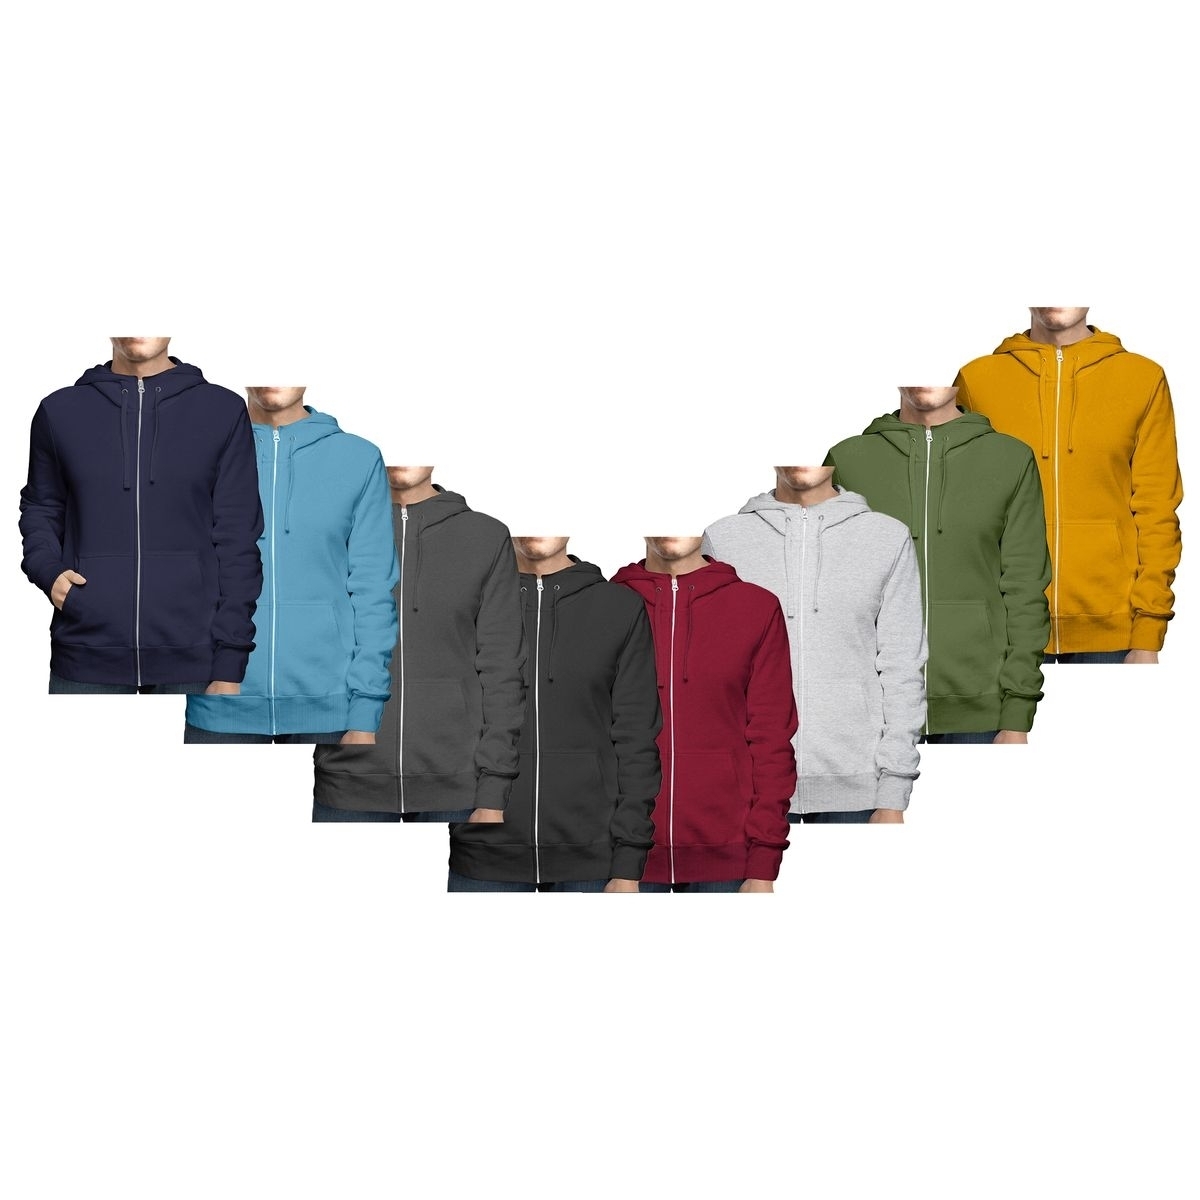 Men's Winter Warm Cozy Full Zip-Up Fleece Lined Soft Hoodie Sweatshirt - Charcoal, Small